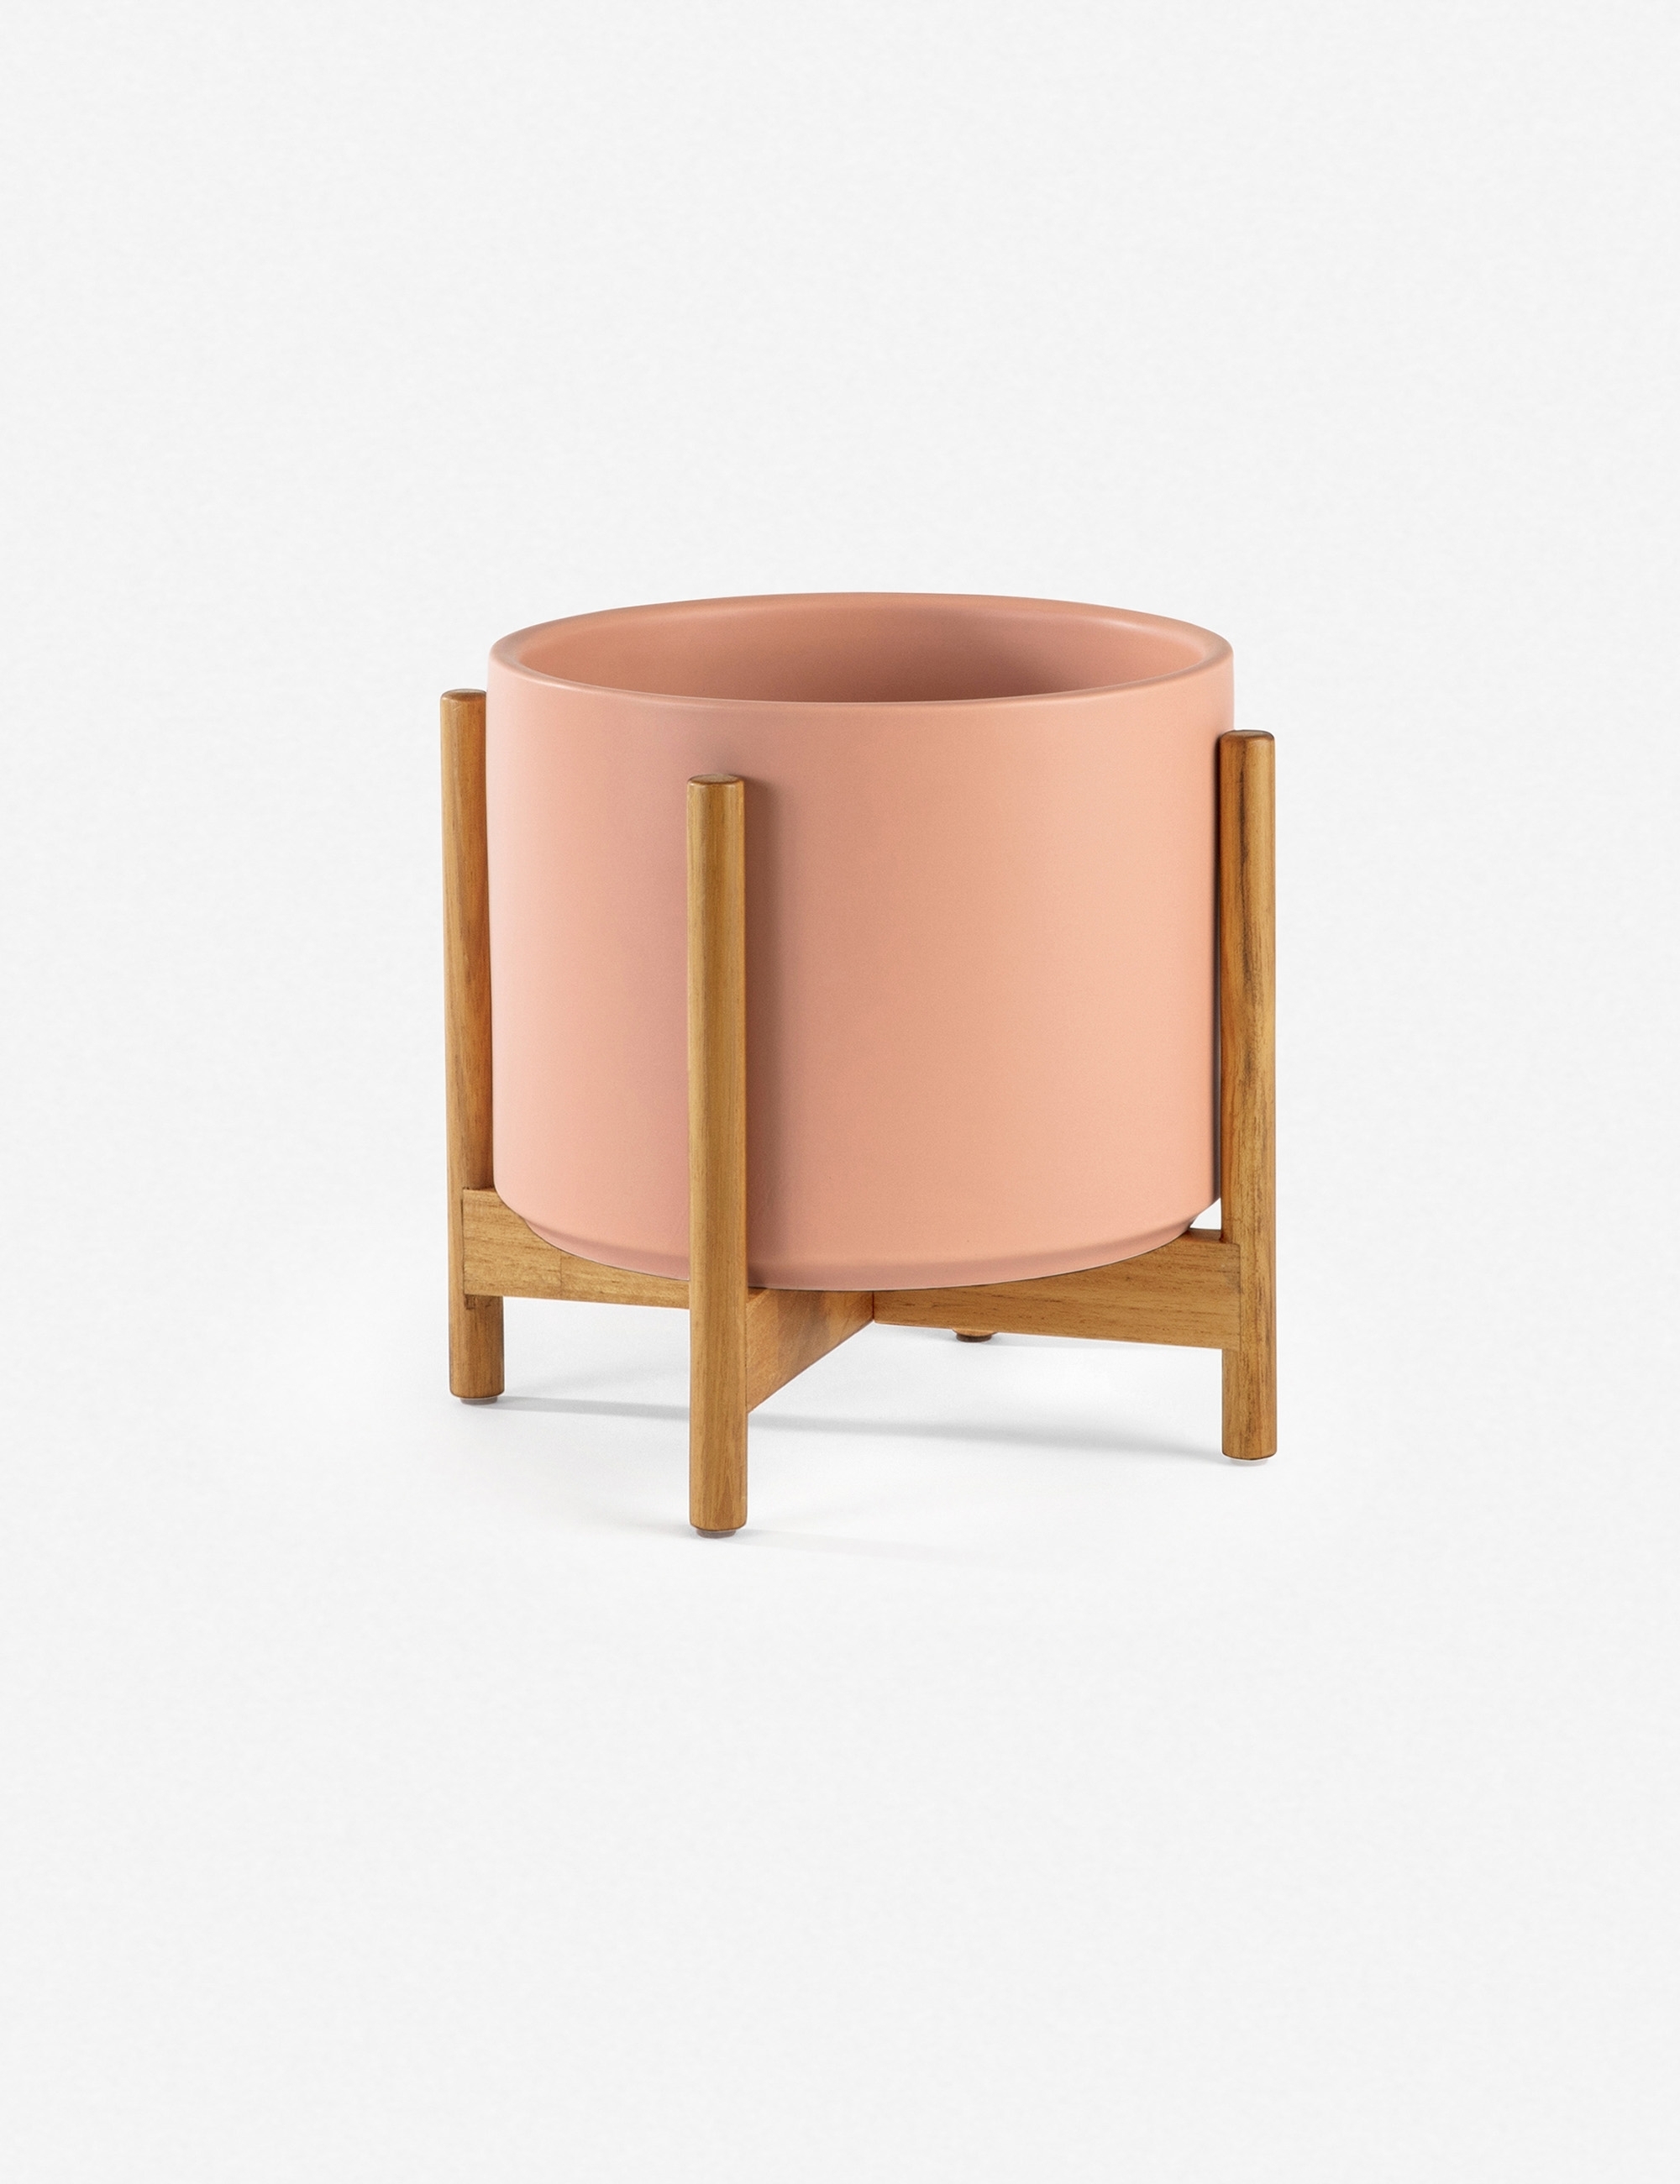 LBE Design Ceramic Planter, Peach 10"Dia x 9"H - with stand - Image 4